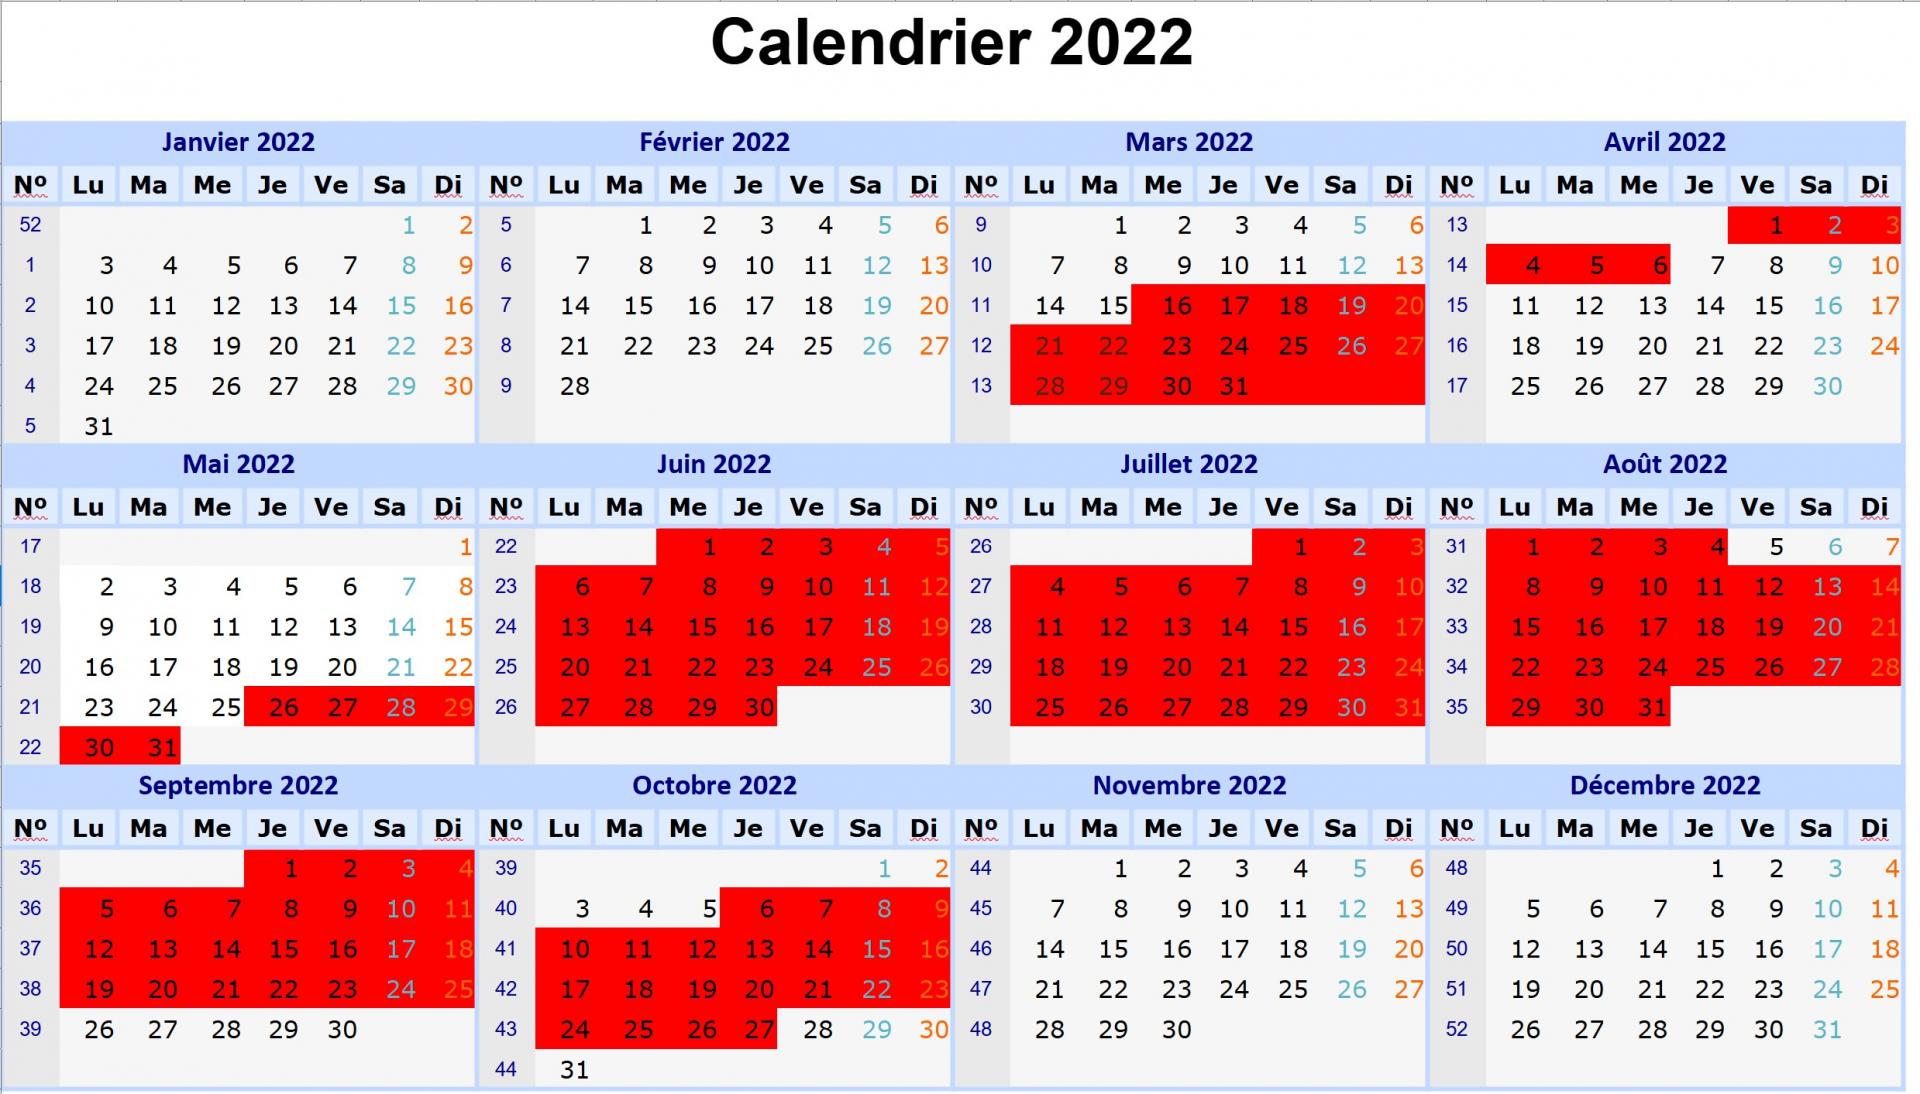 Calendrier 2022 v10 1